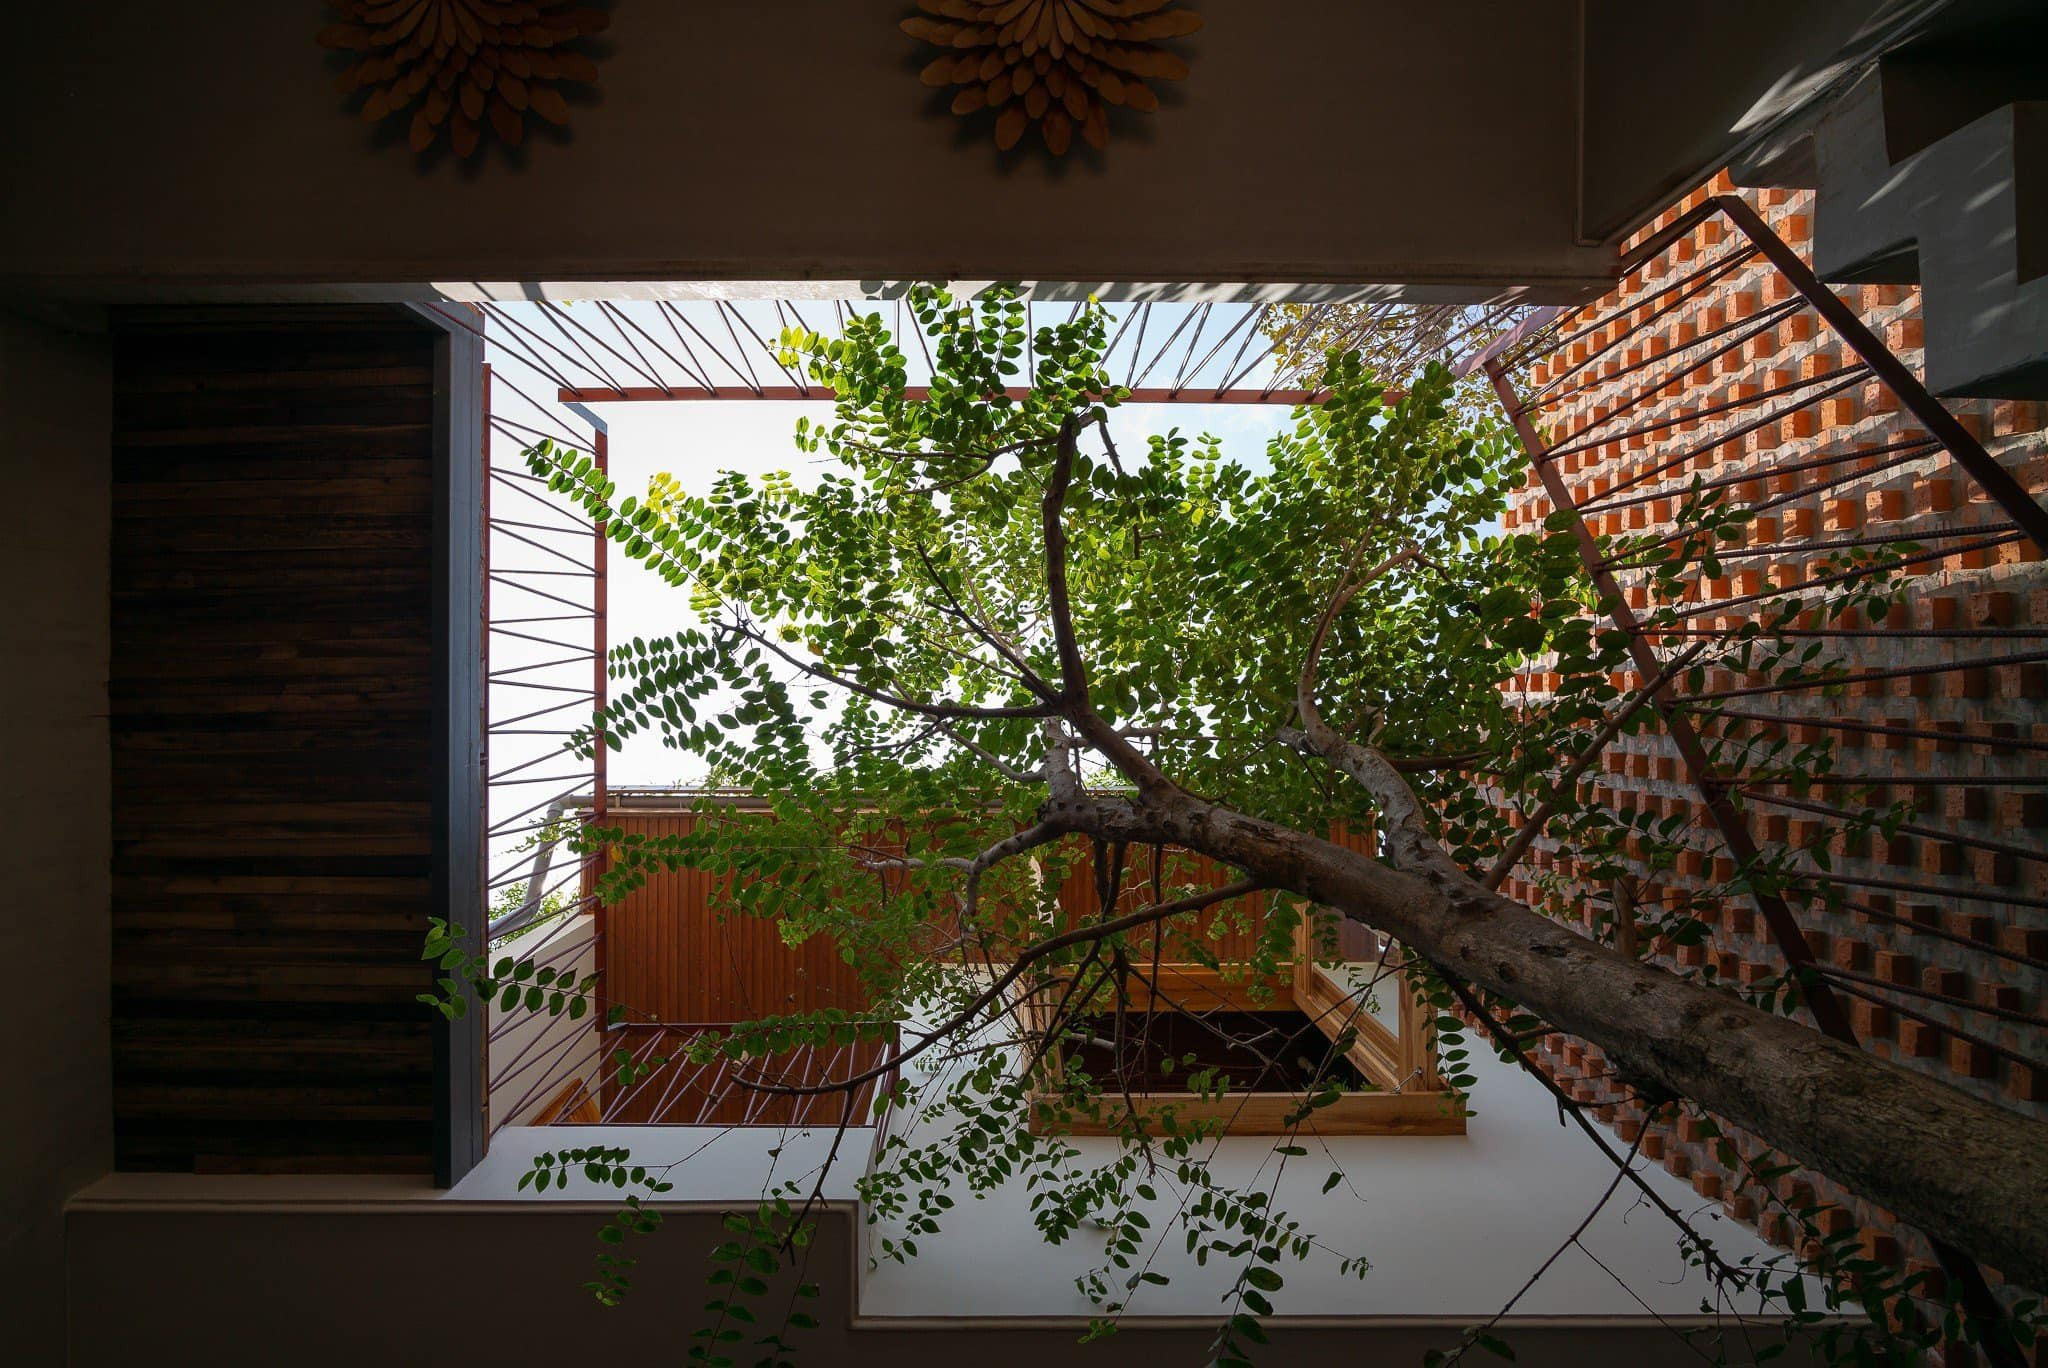 Ngôi nhà Dế Mèn với không gian mát lành nhờ cây xanh, vườn rau sạch trên mái-17